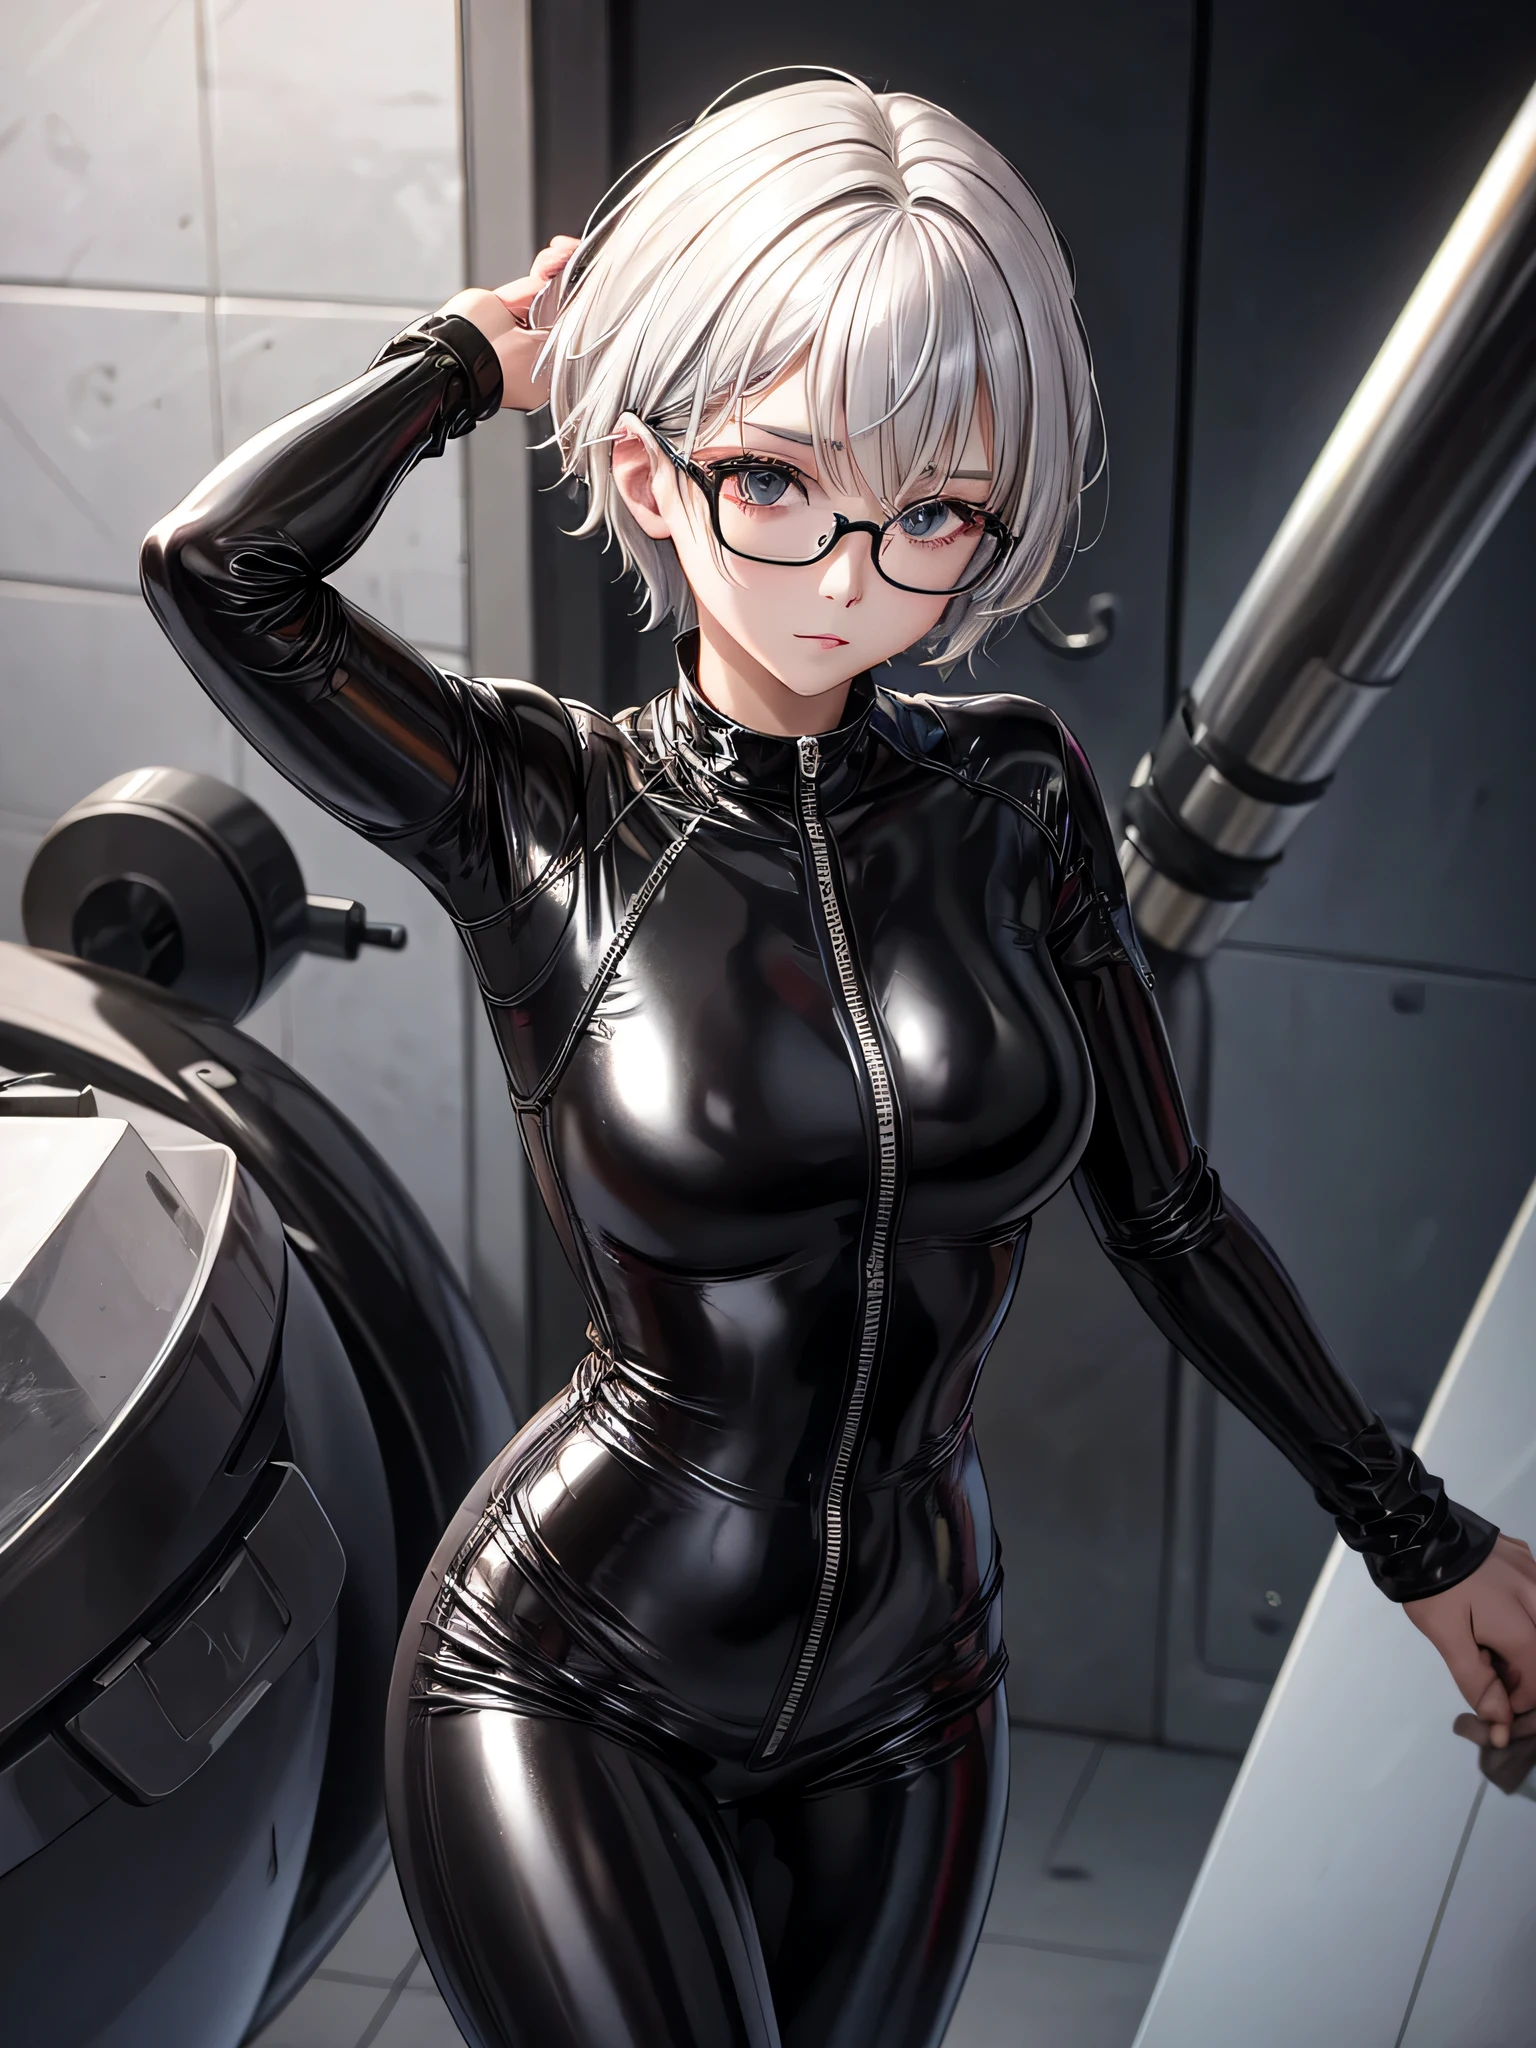 8K UHD in Top-Qualität、Schöne silberhaarige Frau mit kurzen Haaren trägt eine Brille und einen schwarzen Metallic-Latex-Trainingsanzug、schwarzer Metallic-Latex-Trainingsanzug mit versteckter Haut